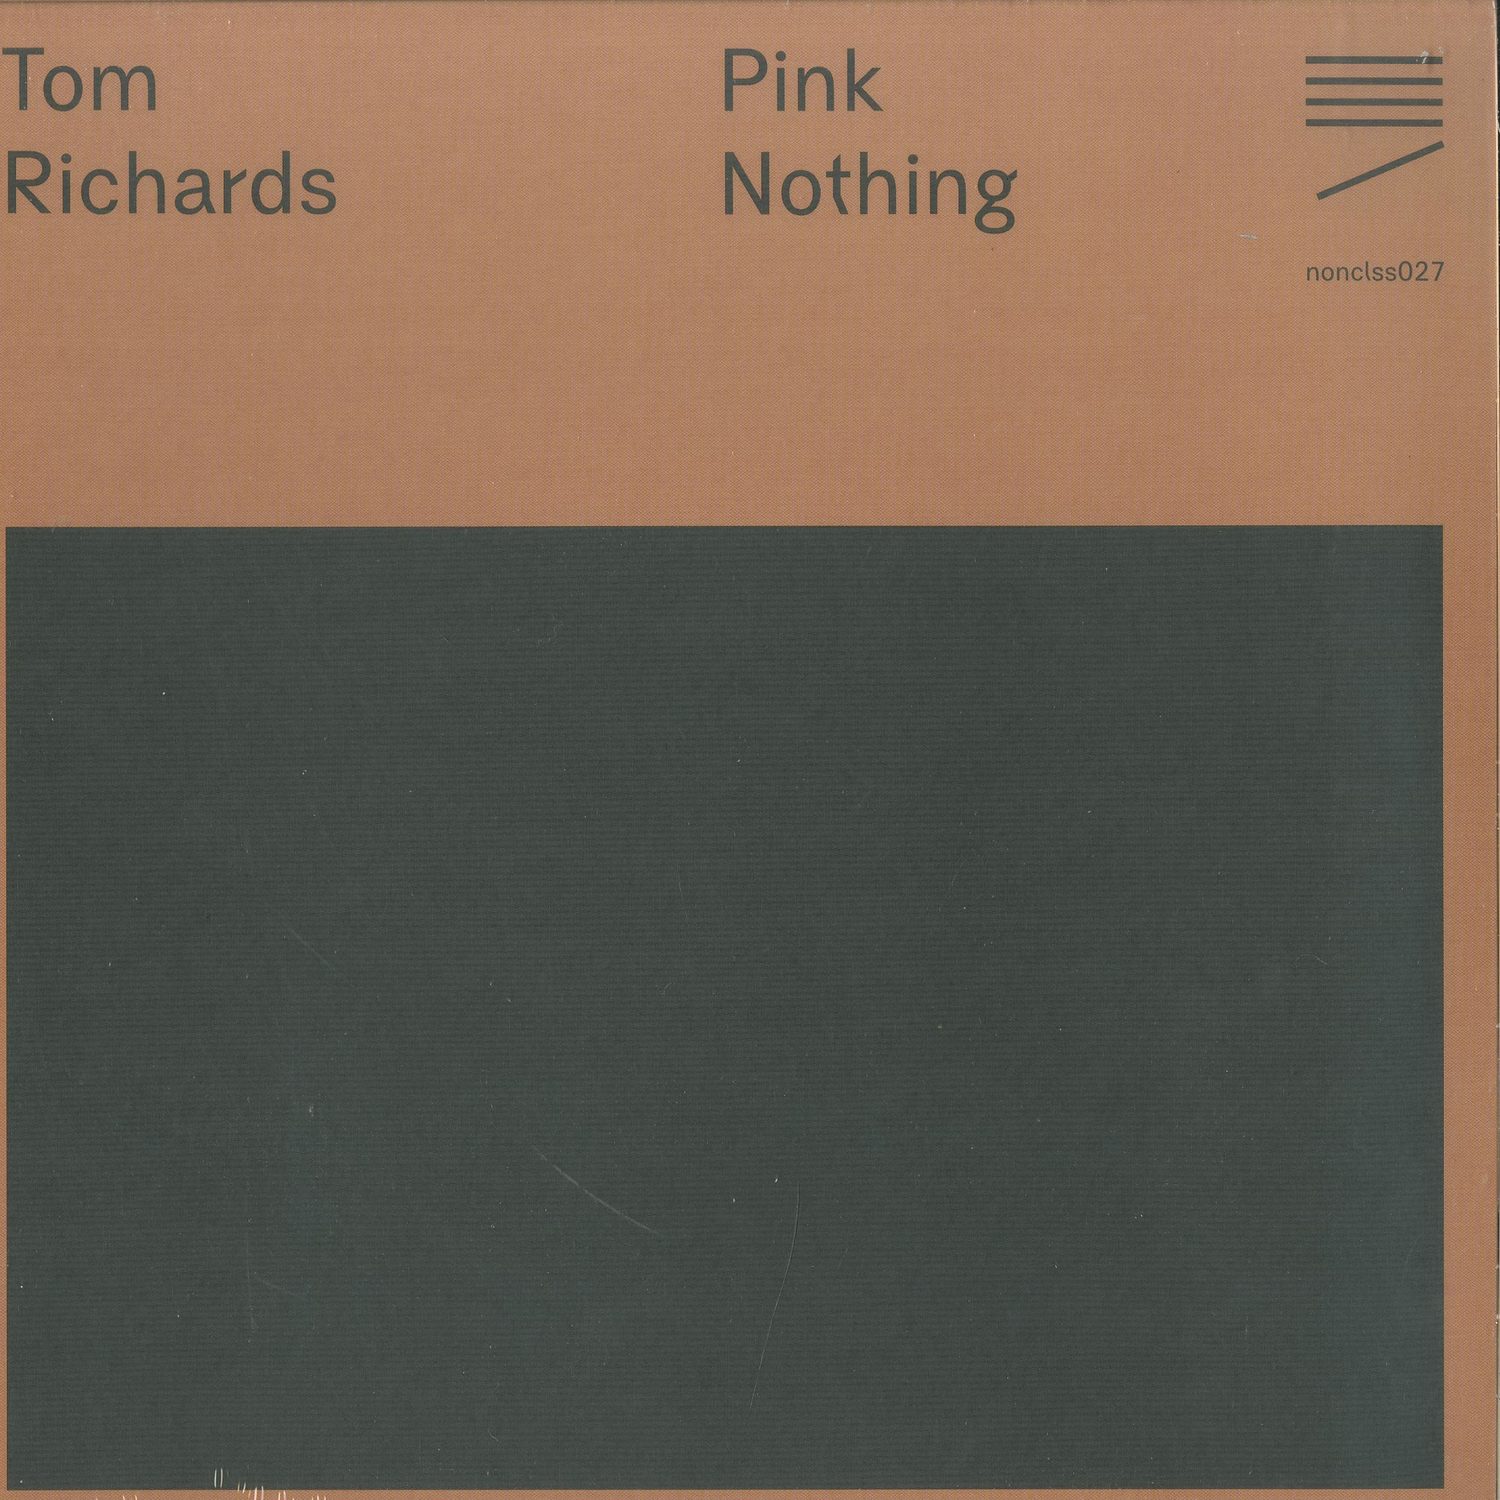 Tom Richards - PINK NOTHING 